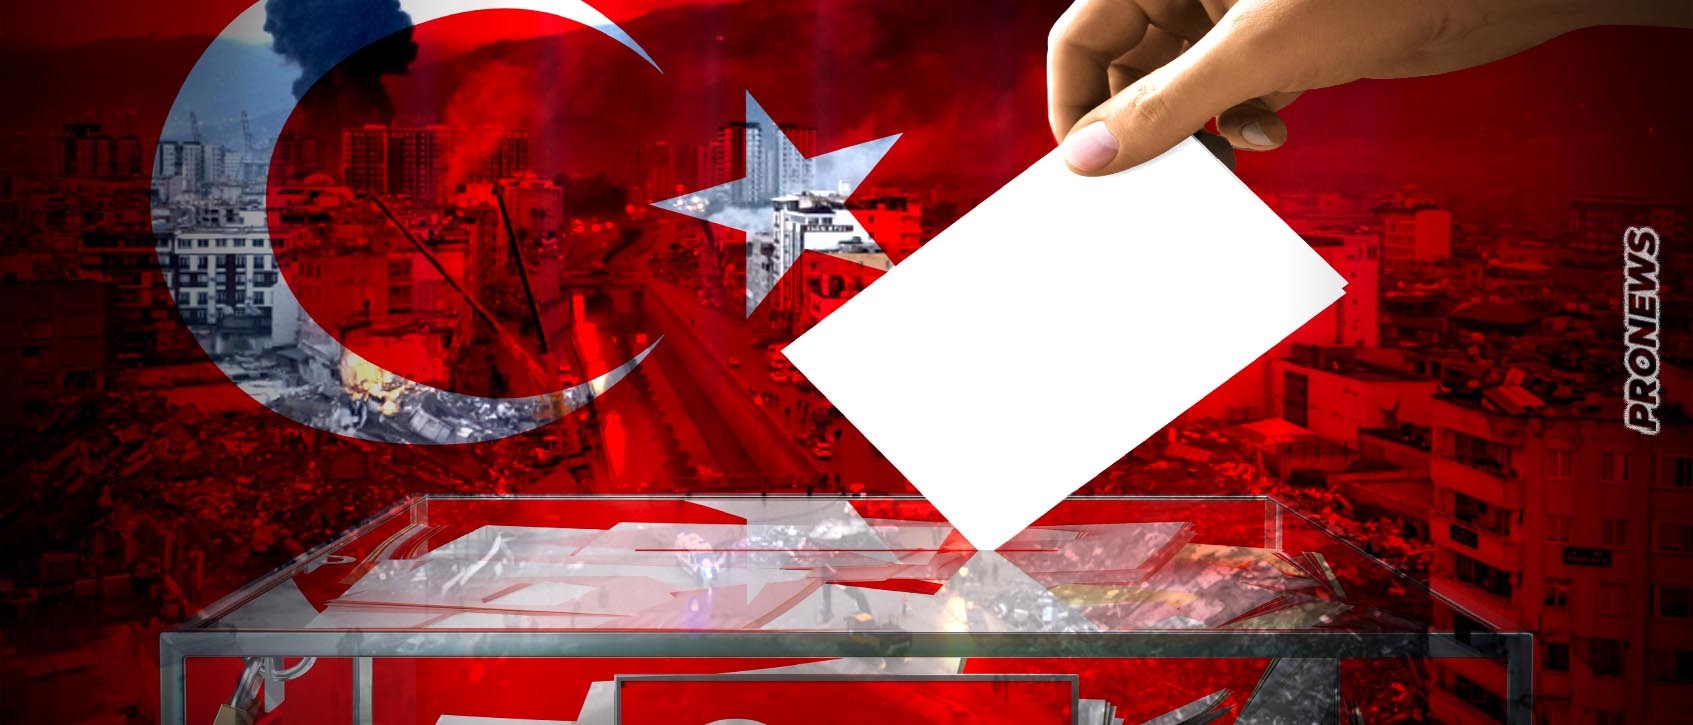 Τουρκικές εκλογές: Πόσο πιθανό είναι να αναβληθούν; – Τι προβλέπει το τουρκικό Σύνταγμα για την κατάσταση εκτάκτου ανάγκης